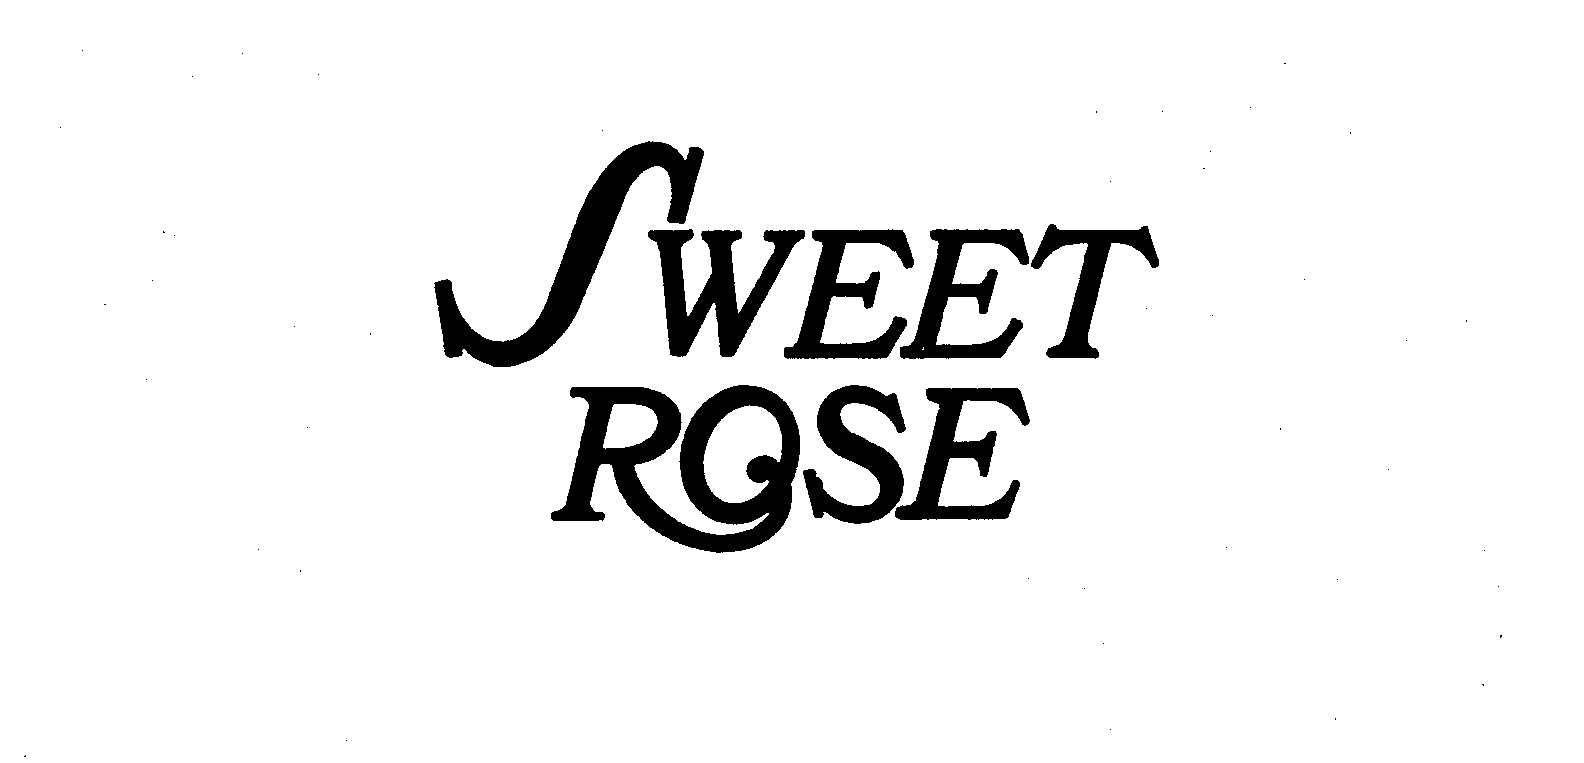  SWEET ROSE